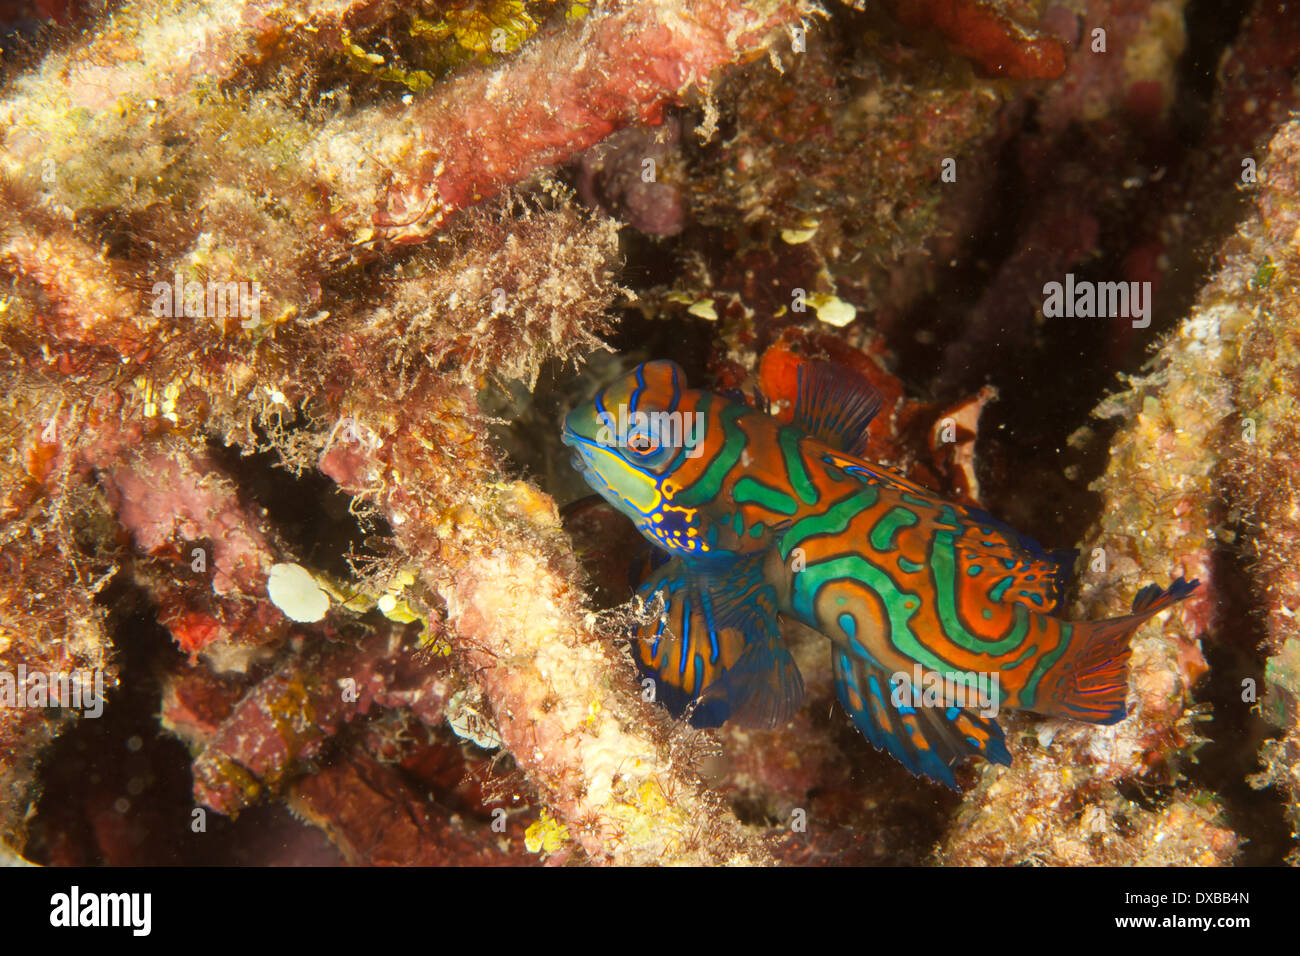 Mandarinfish, Synchiropus splendidus, Raja Ampat, Indonesia Stock Photo